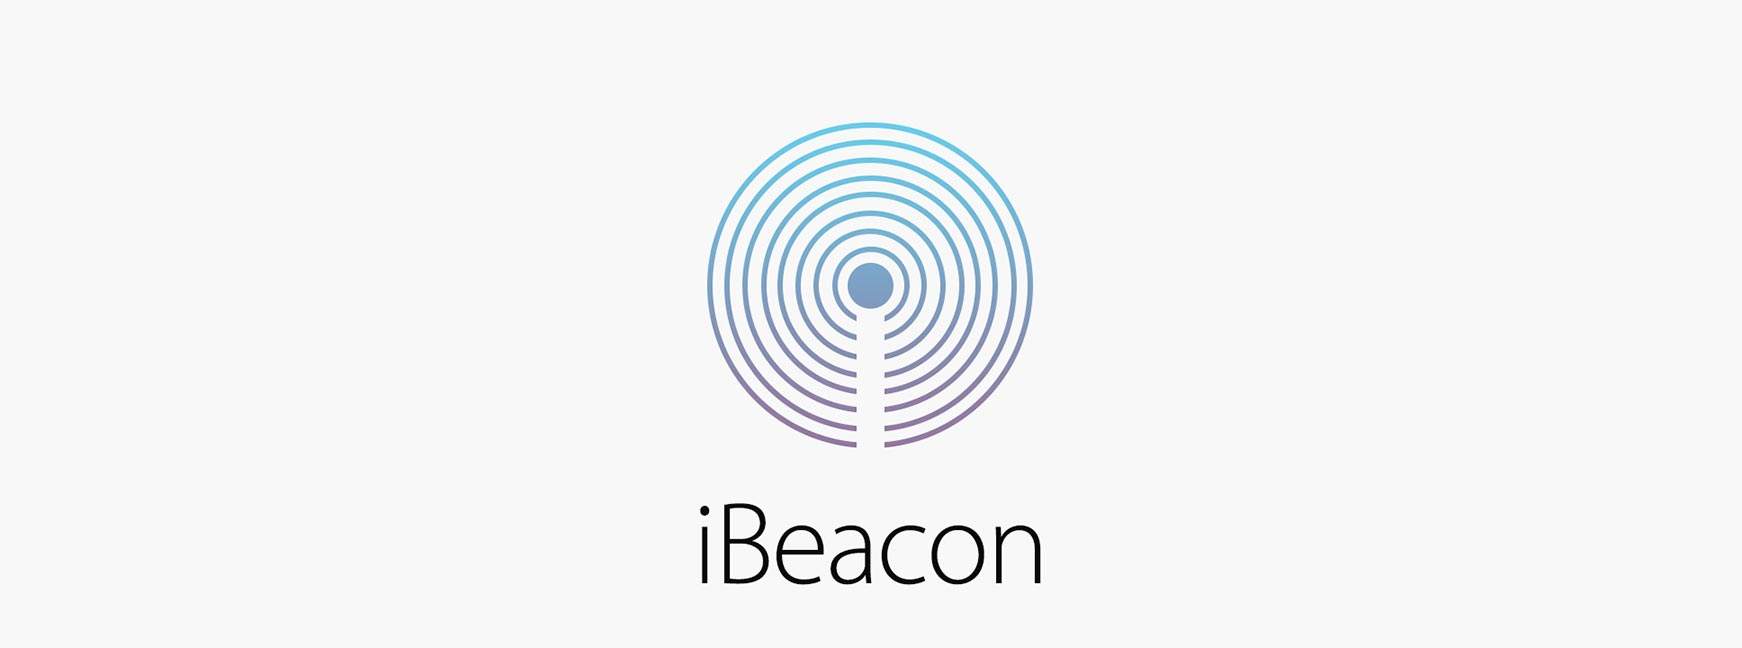 Un guide de développement avec iBeacon pour les balises Bluetooth